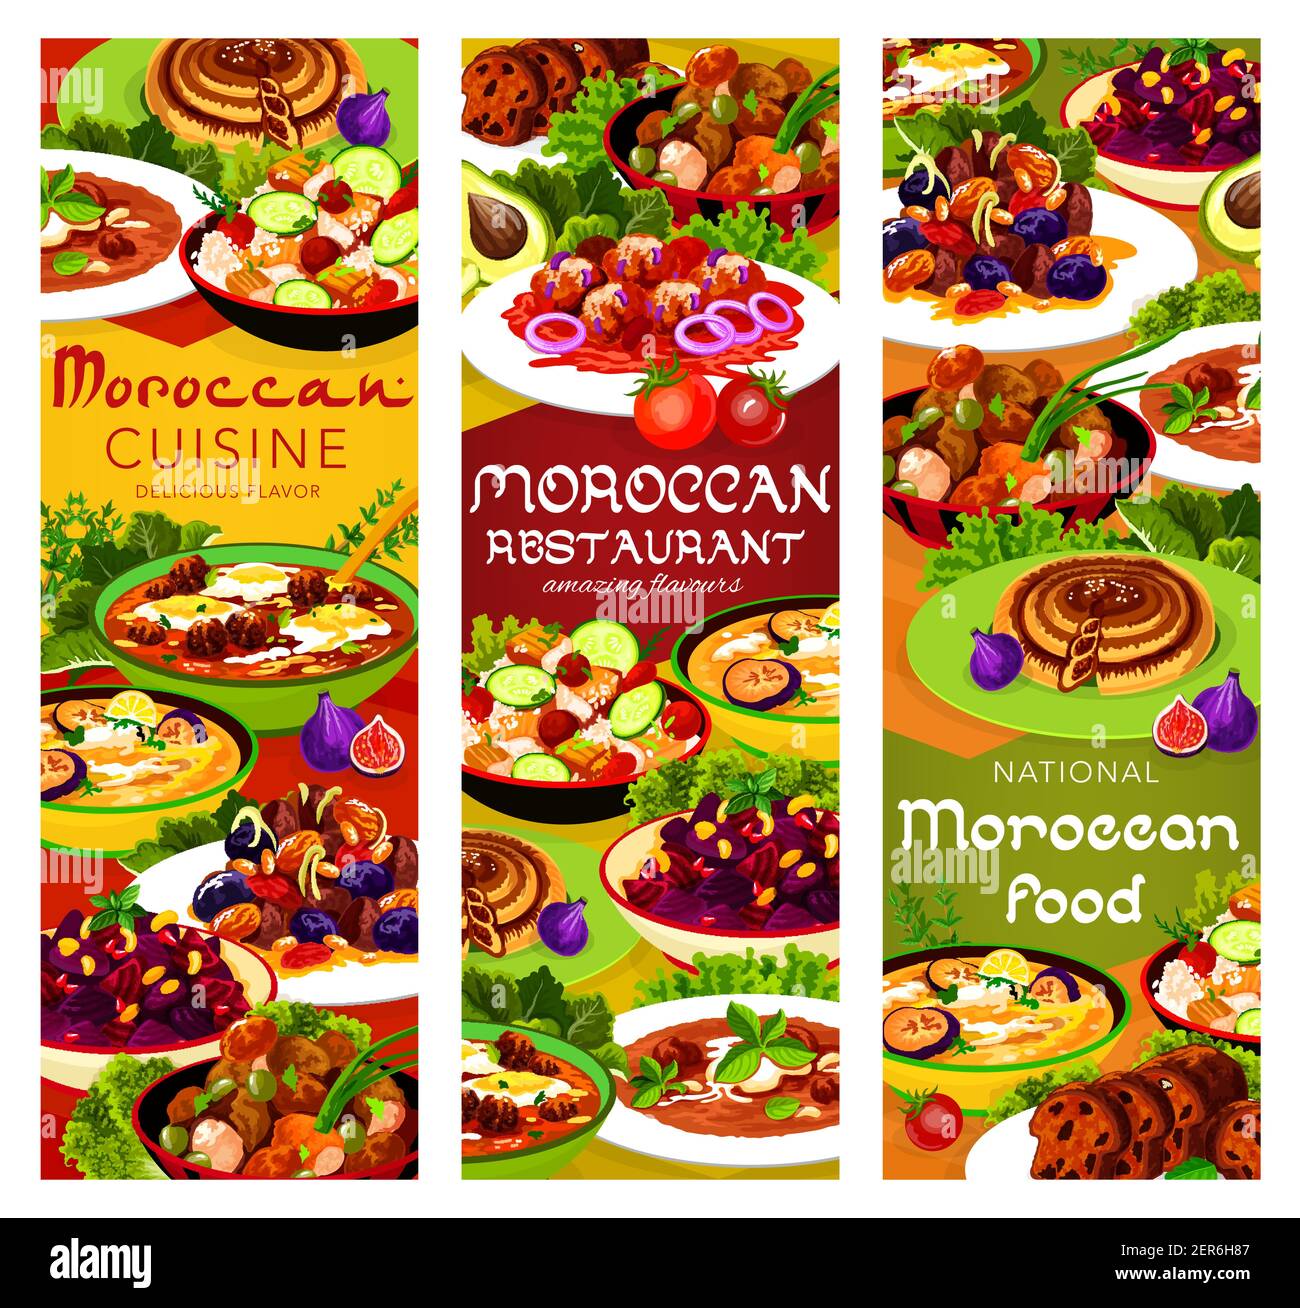 Marokkanische Lebensmittel Vektor Fleisch mit Pflaumen und Mandel,  Granatapfel Rote Beete Salat und Hühnersuppe. Couscous Salat mit Gemüse,  Balkan kalte Auberginen so Stock-Vektorgrafik - Alamy